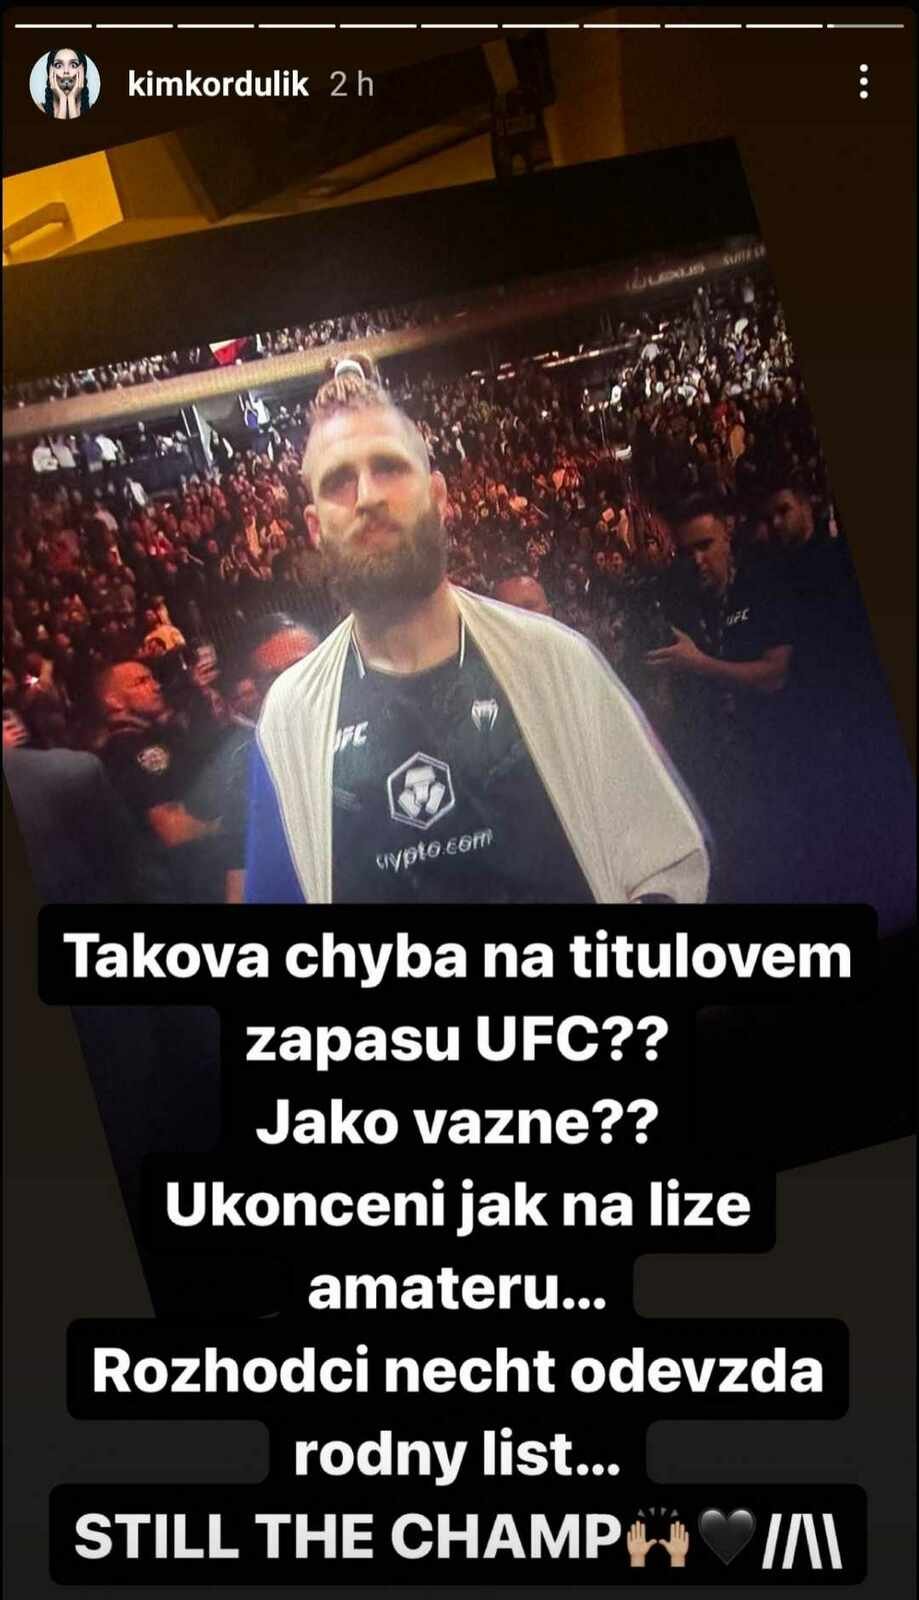 Kamilu Kordulíkovou, bývalou přítelkyni MMA bijce Jiřího Procházky, pořádně naštval závěr zápasu